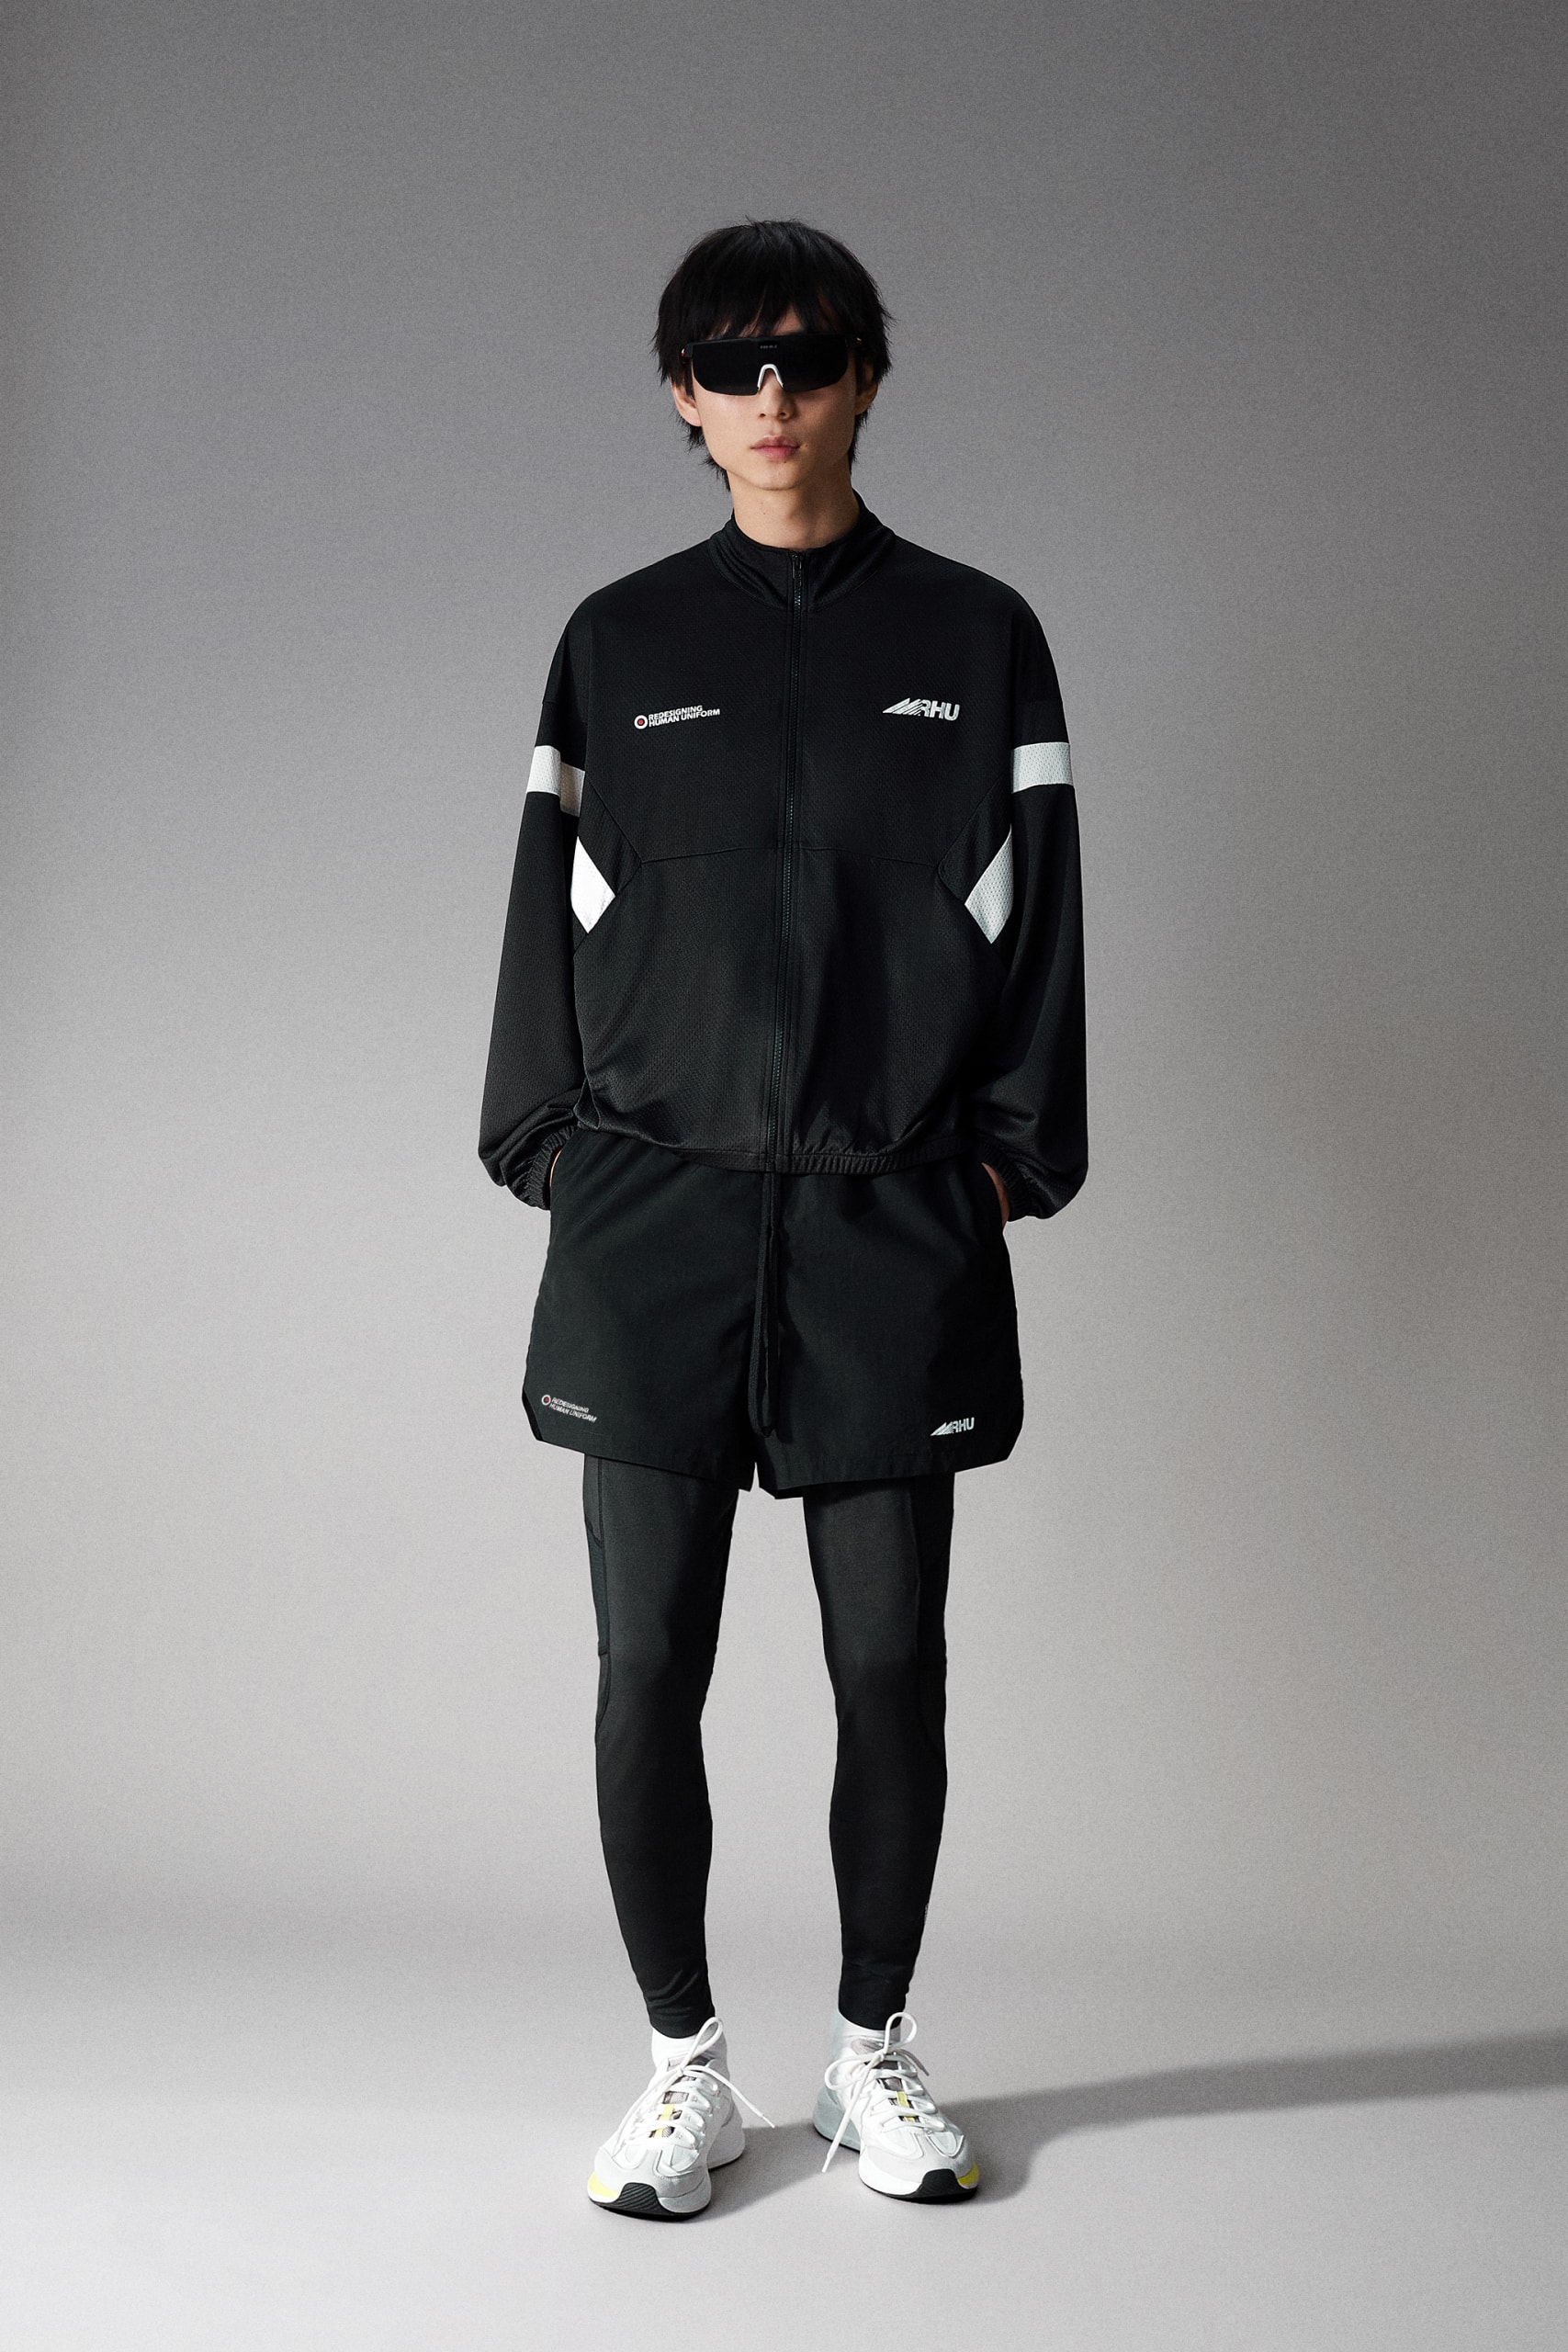 ザラxルイージビラセノールからコラボコレクションが登場 ZARA x Rhuigi Villaseñor  new sports wear collection release